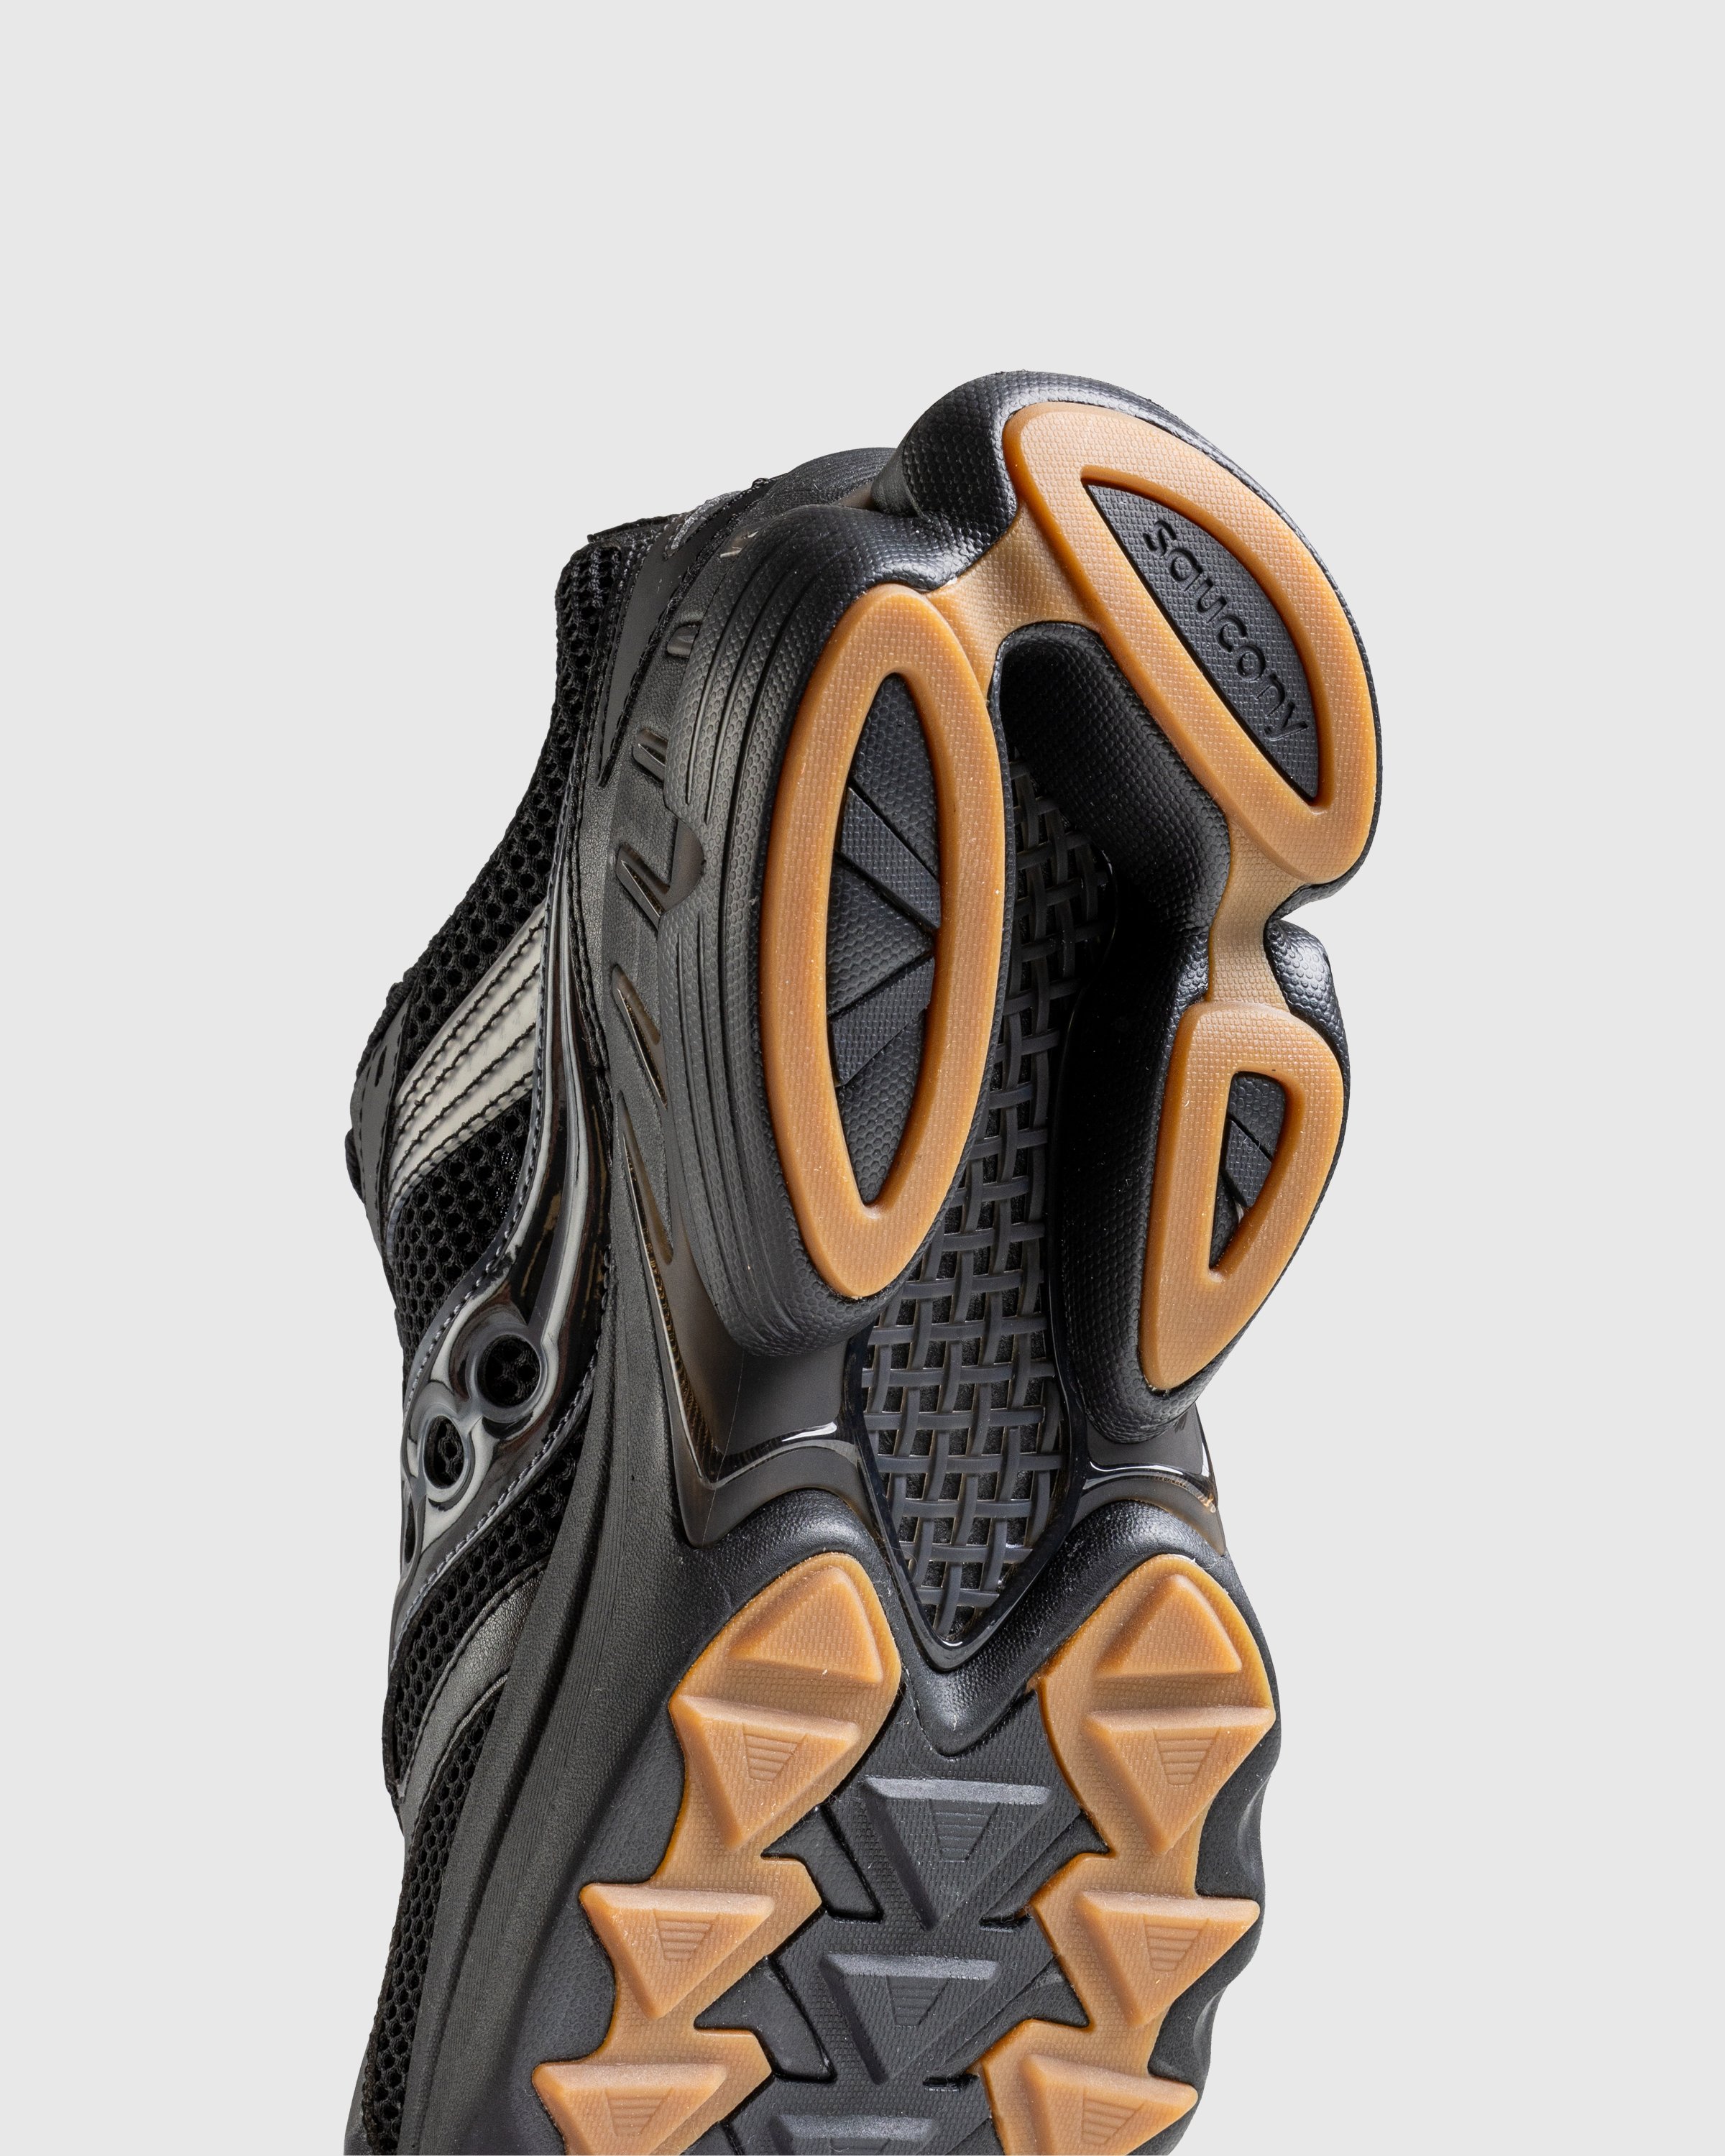 Saucony - GRID NXT - BLACK - Footwear - BLACK - Image 6